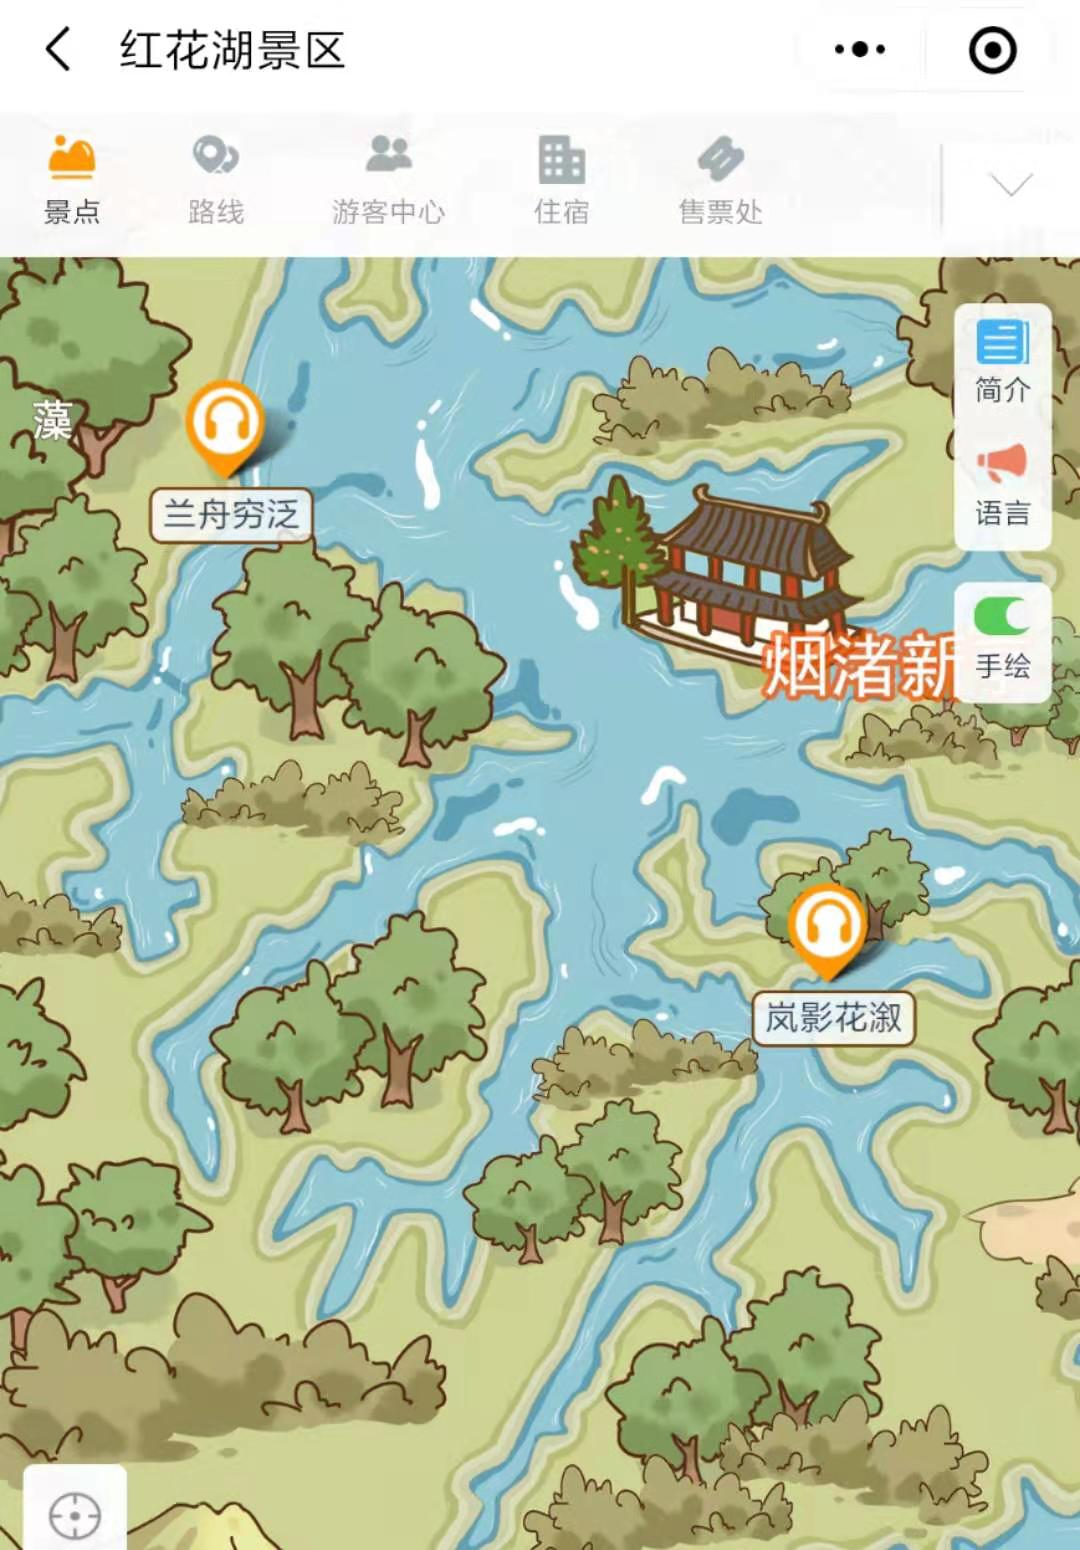 2021年广东惠州红花湖电子导览、语音讲解、手绘地图等智能导览系统功能上线了.jpg